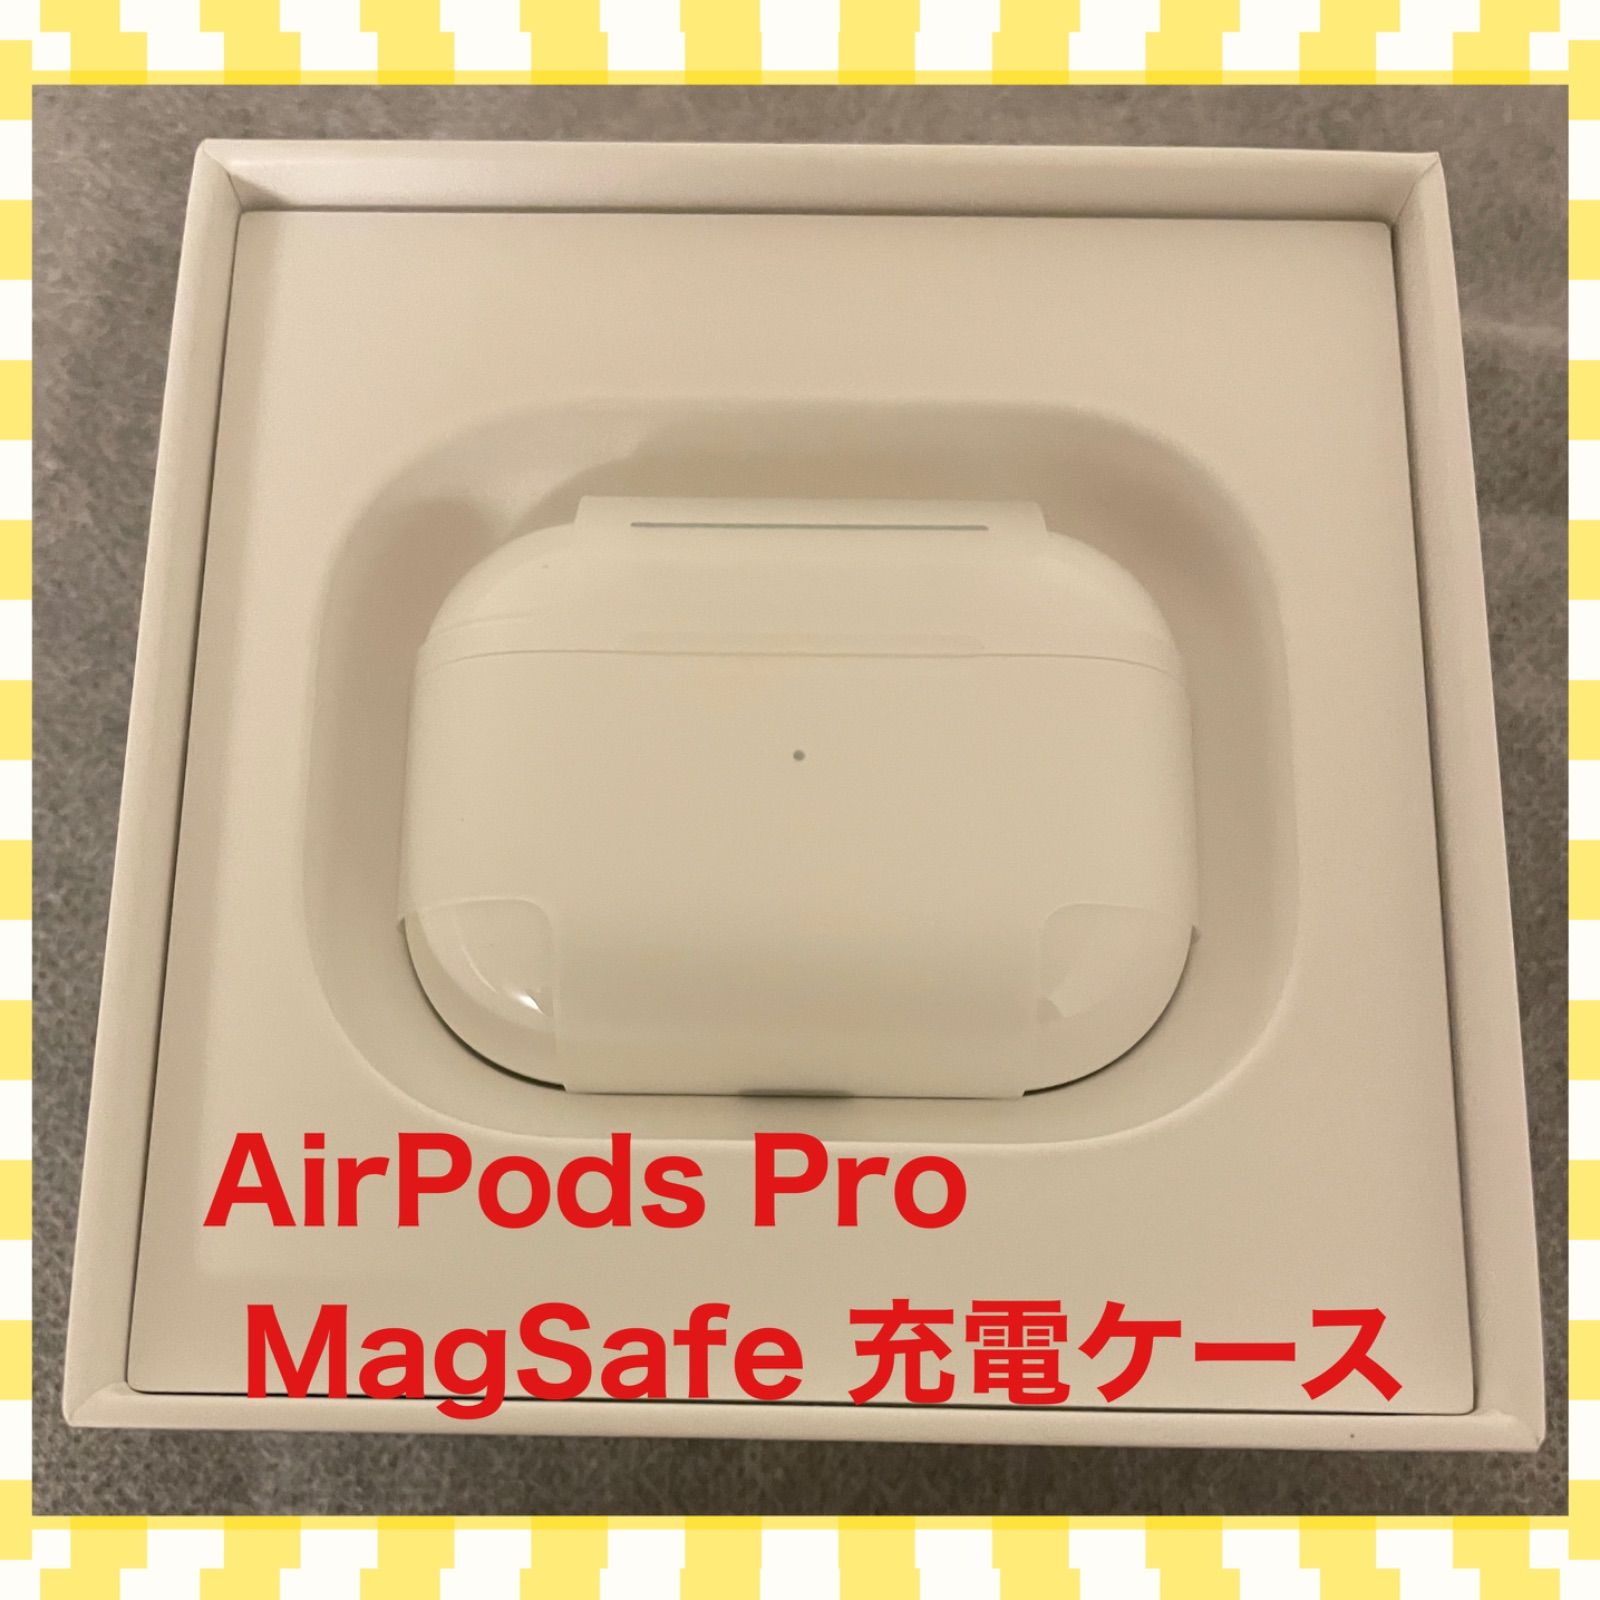 【MagSafe対応】AirPods Pro 充電器 (充電ケース)